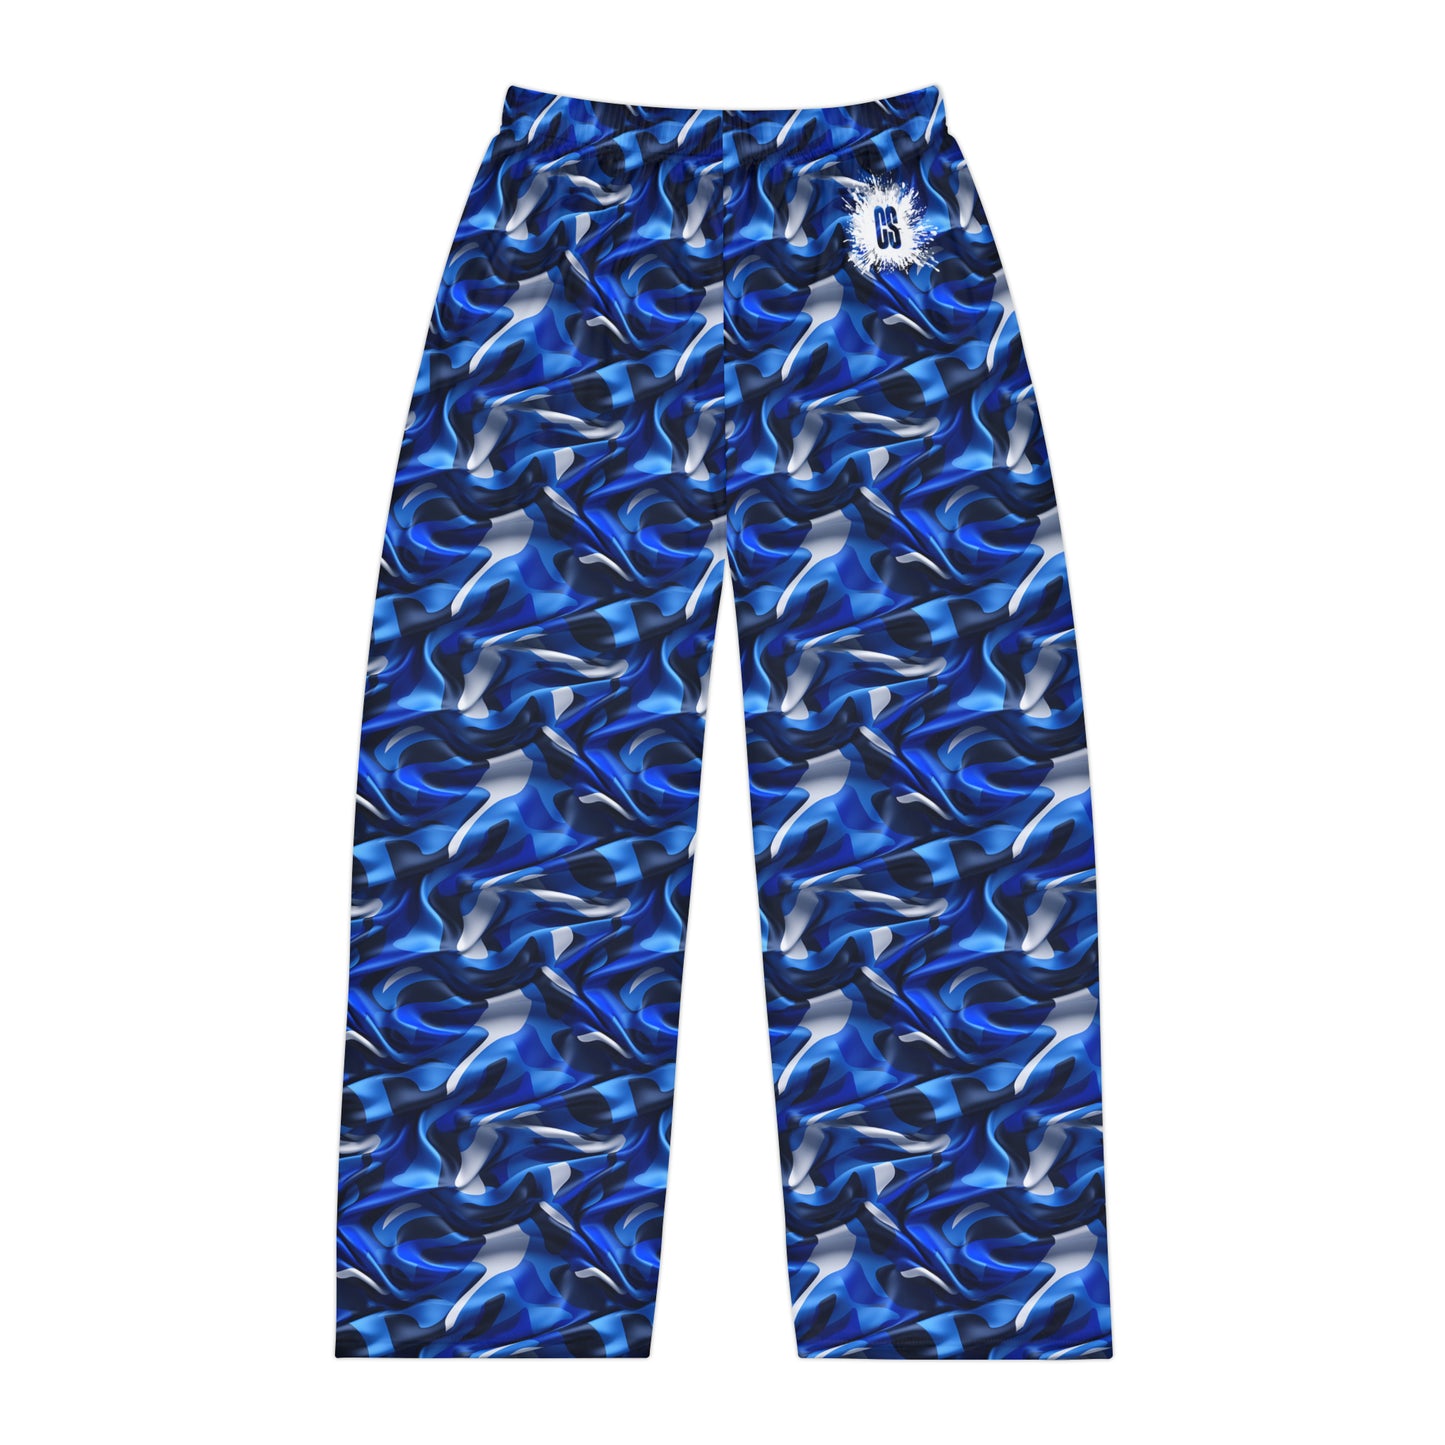 Blue & Grey Satin Camo Men's Pajama Pants